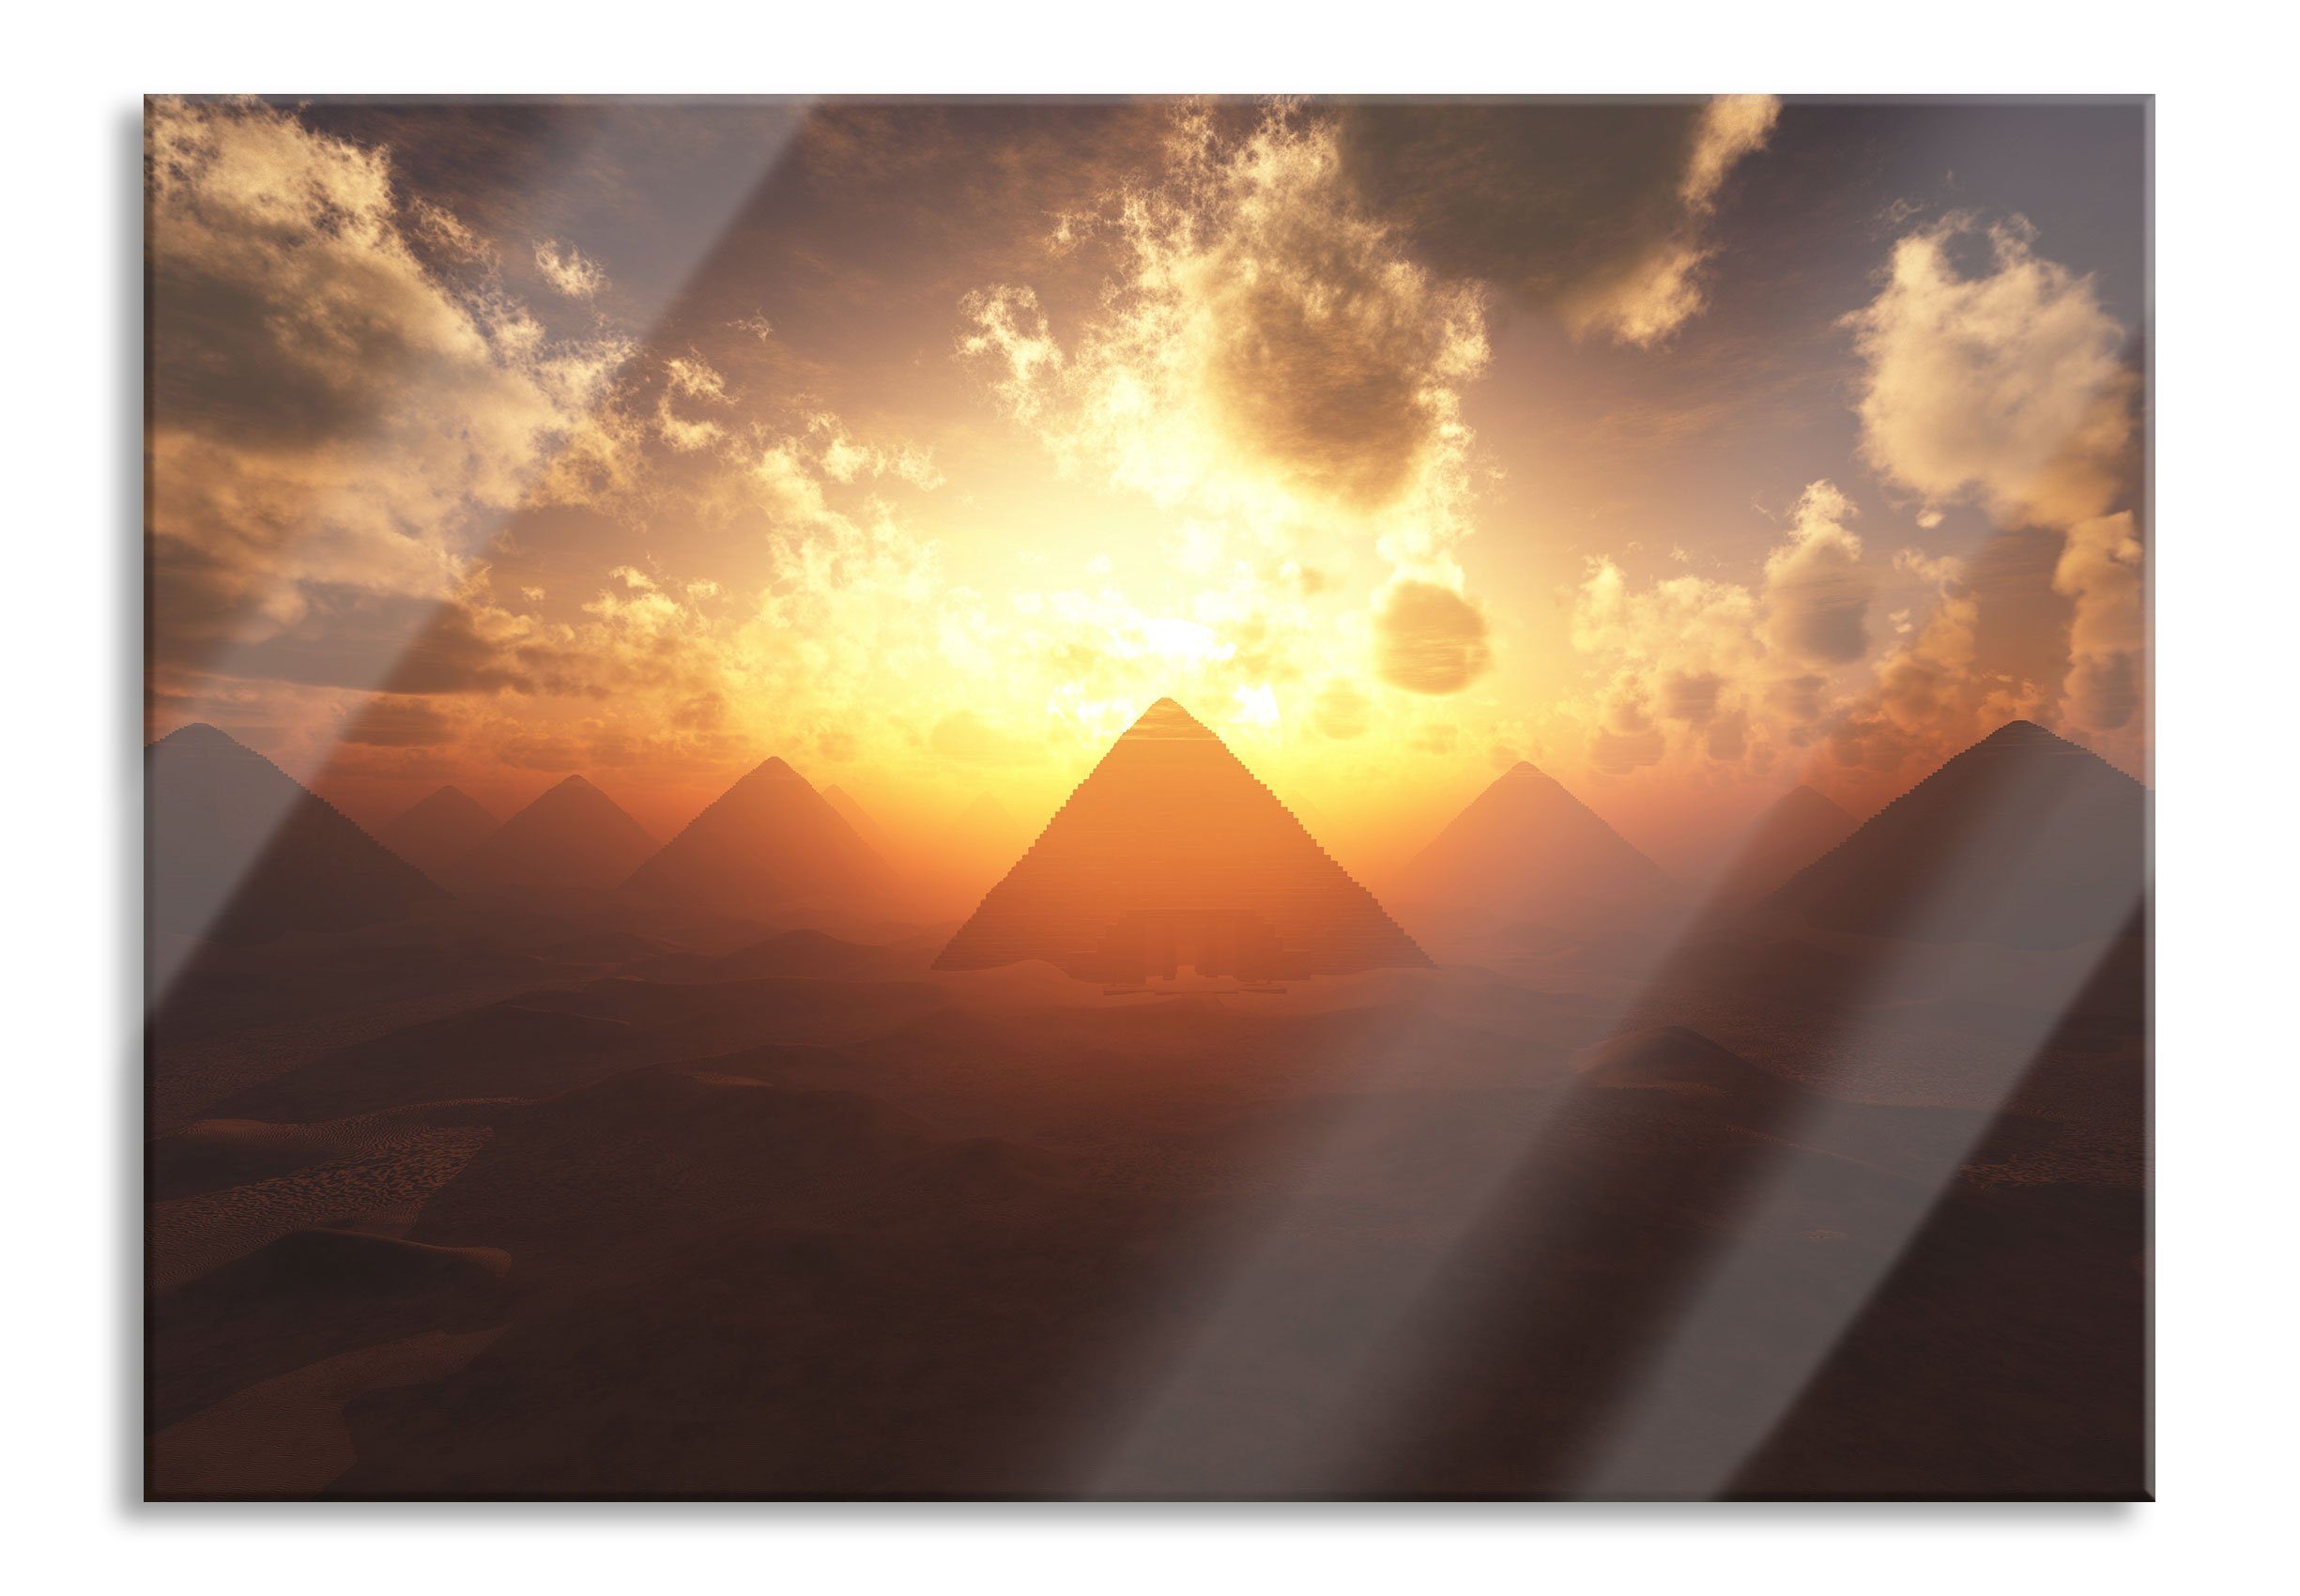 Pixxprint Glasbild Pyramiden beim Sonnenuntergang, Pyramiden beim Sonnenuntergang (1 St), Glasbild aus Echtglas, inkl. Aufhängungen und Abstandshalter